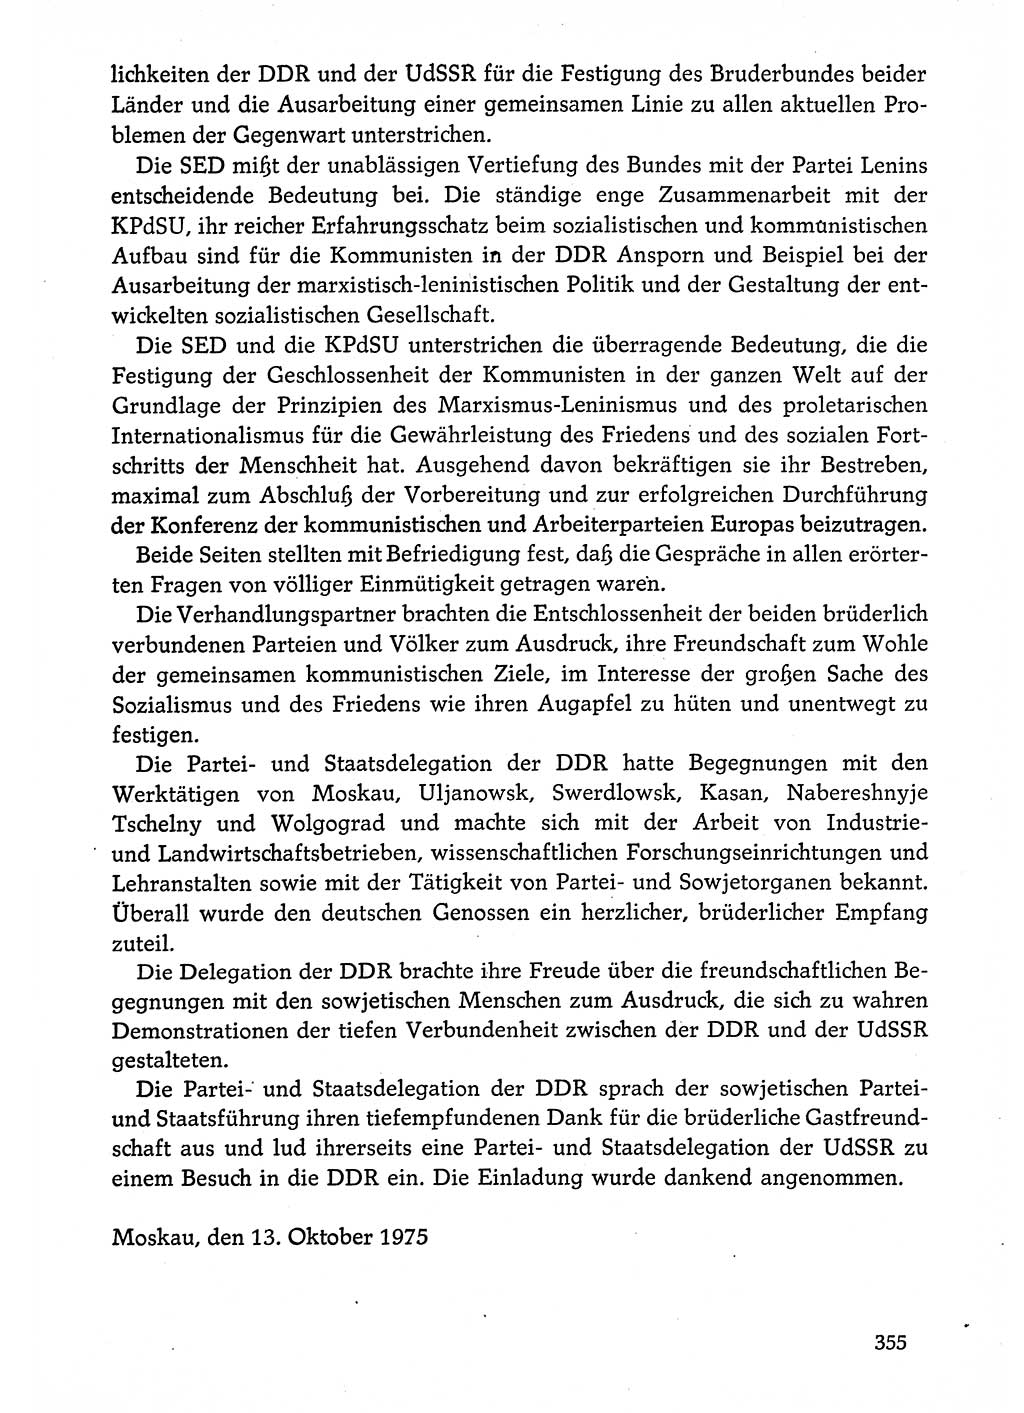 Dokumente der Sozialistischen Einheitspartei Deutschlands (SED) [Deutsche Demokratische Republik (DDR)] 1974-1975, Seite 355 (Dok. SED DDR 1978, Bd. ⅩⅤ, S. 355)